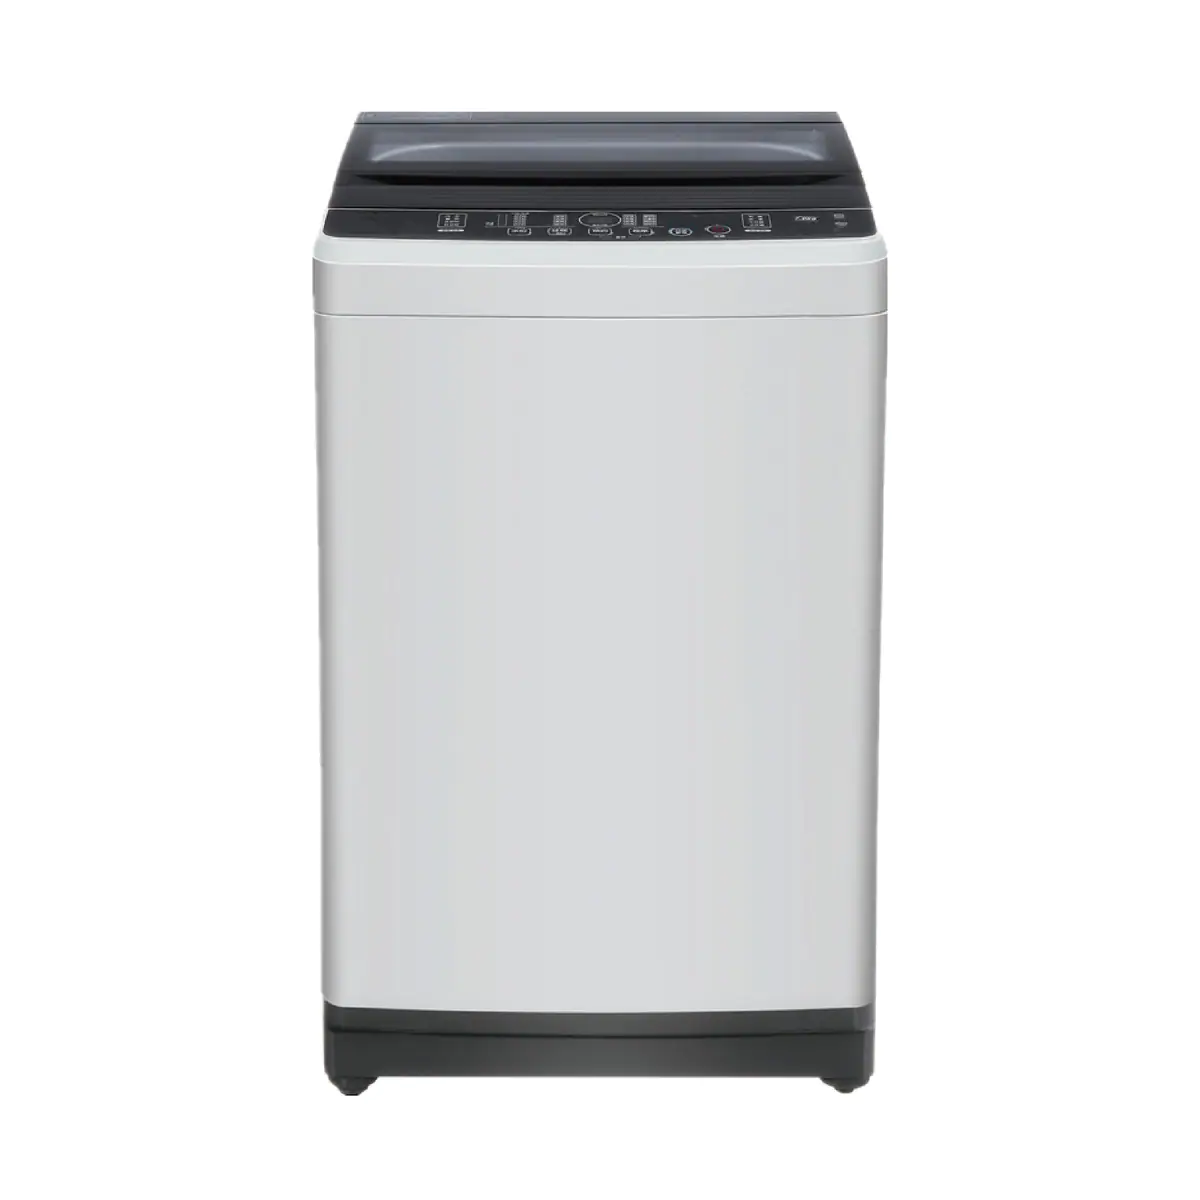 KANEDA [S/i]7KG上置式洗衣機 KT-072P 高水位